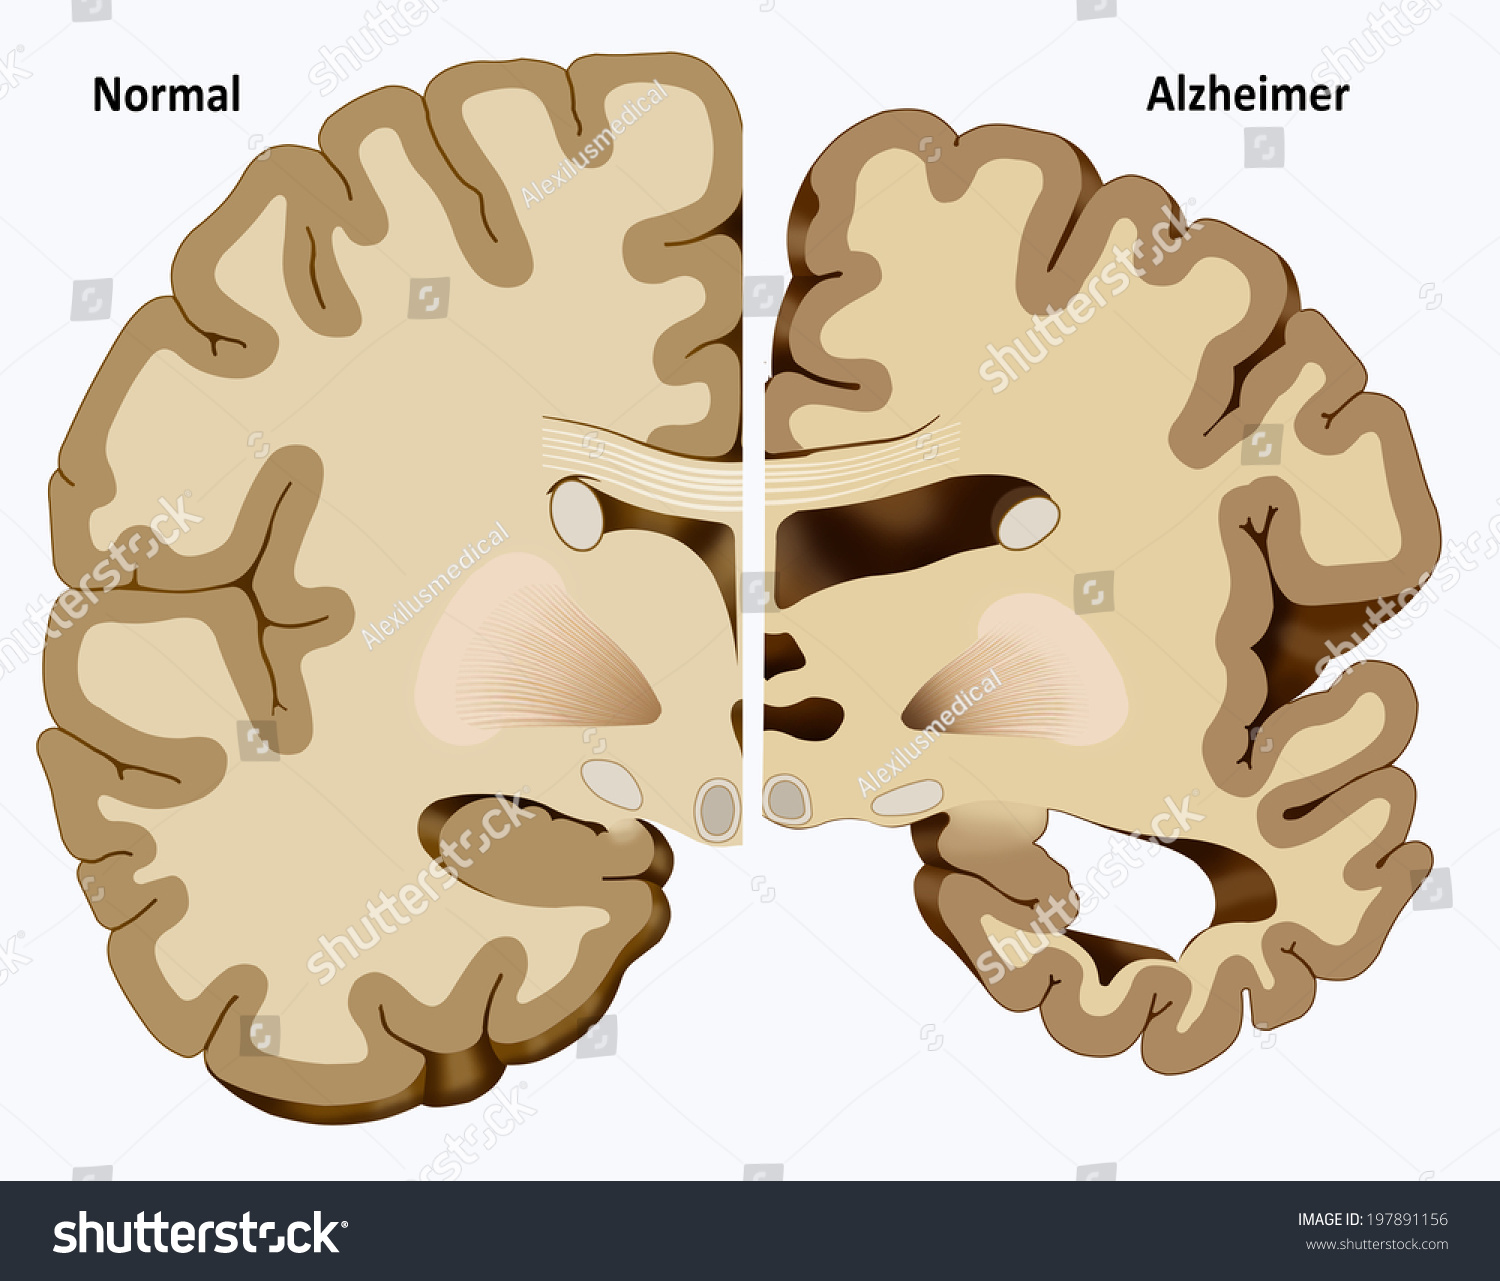 Brain 172. Расширение желудочков головного мозга. Увеличенные желудочки головного мозга у больных шизофренией.